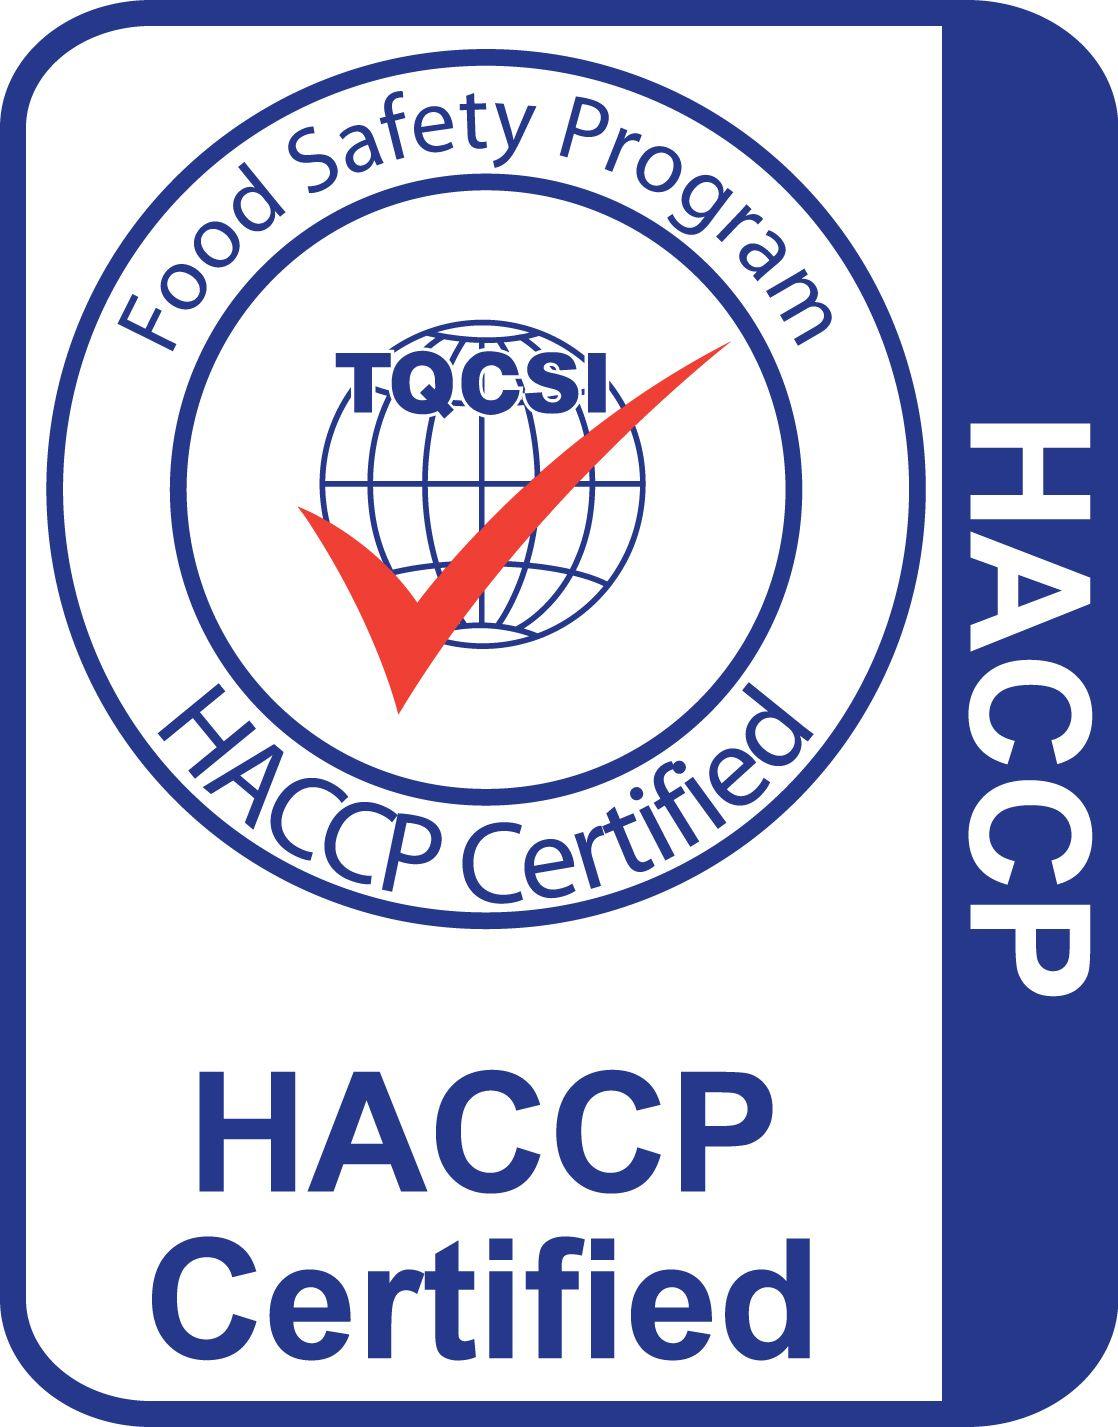 HACCP Logo - HACCP